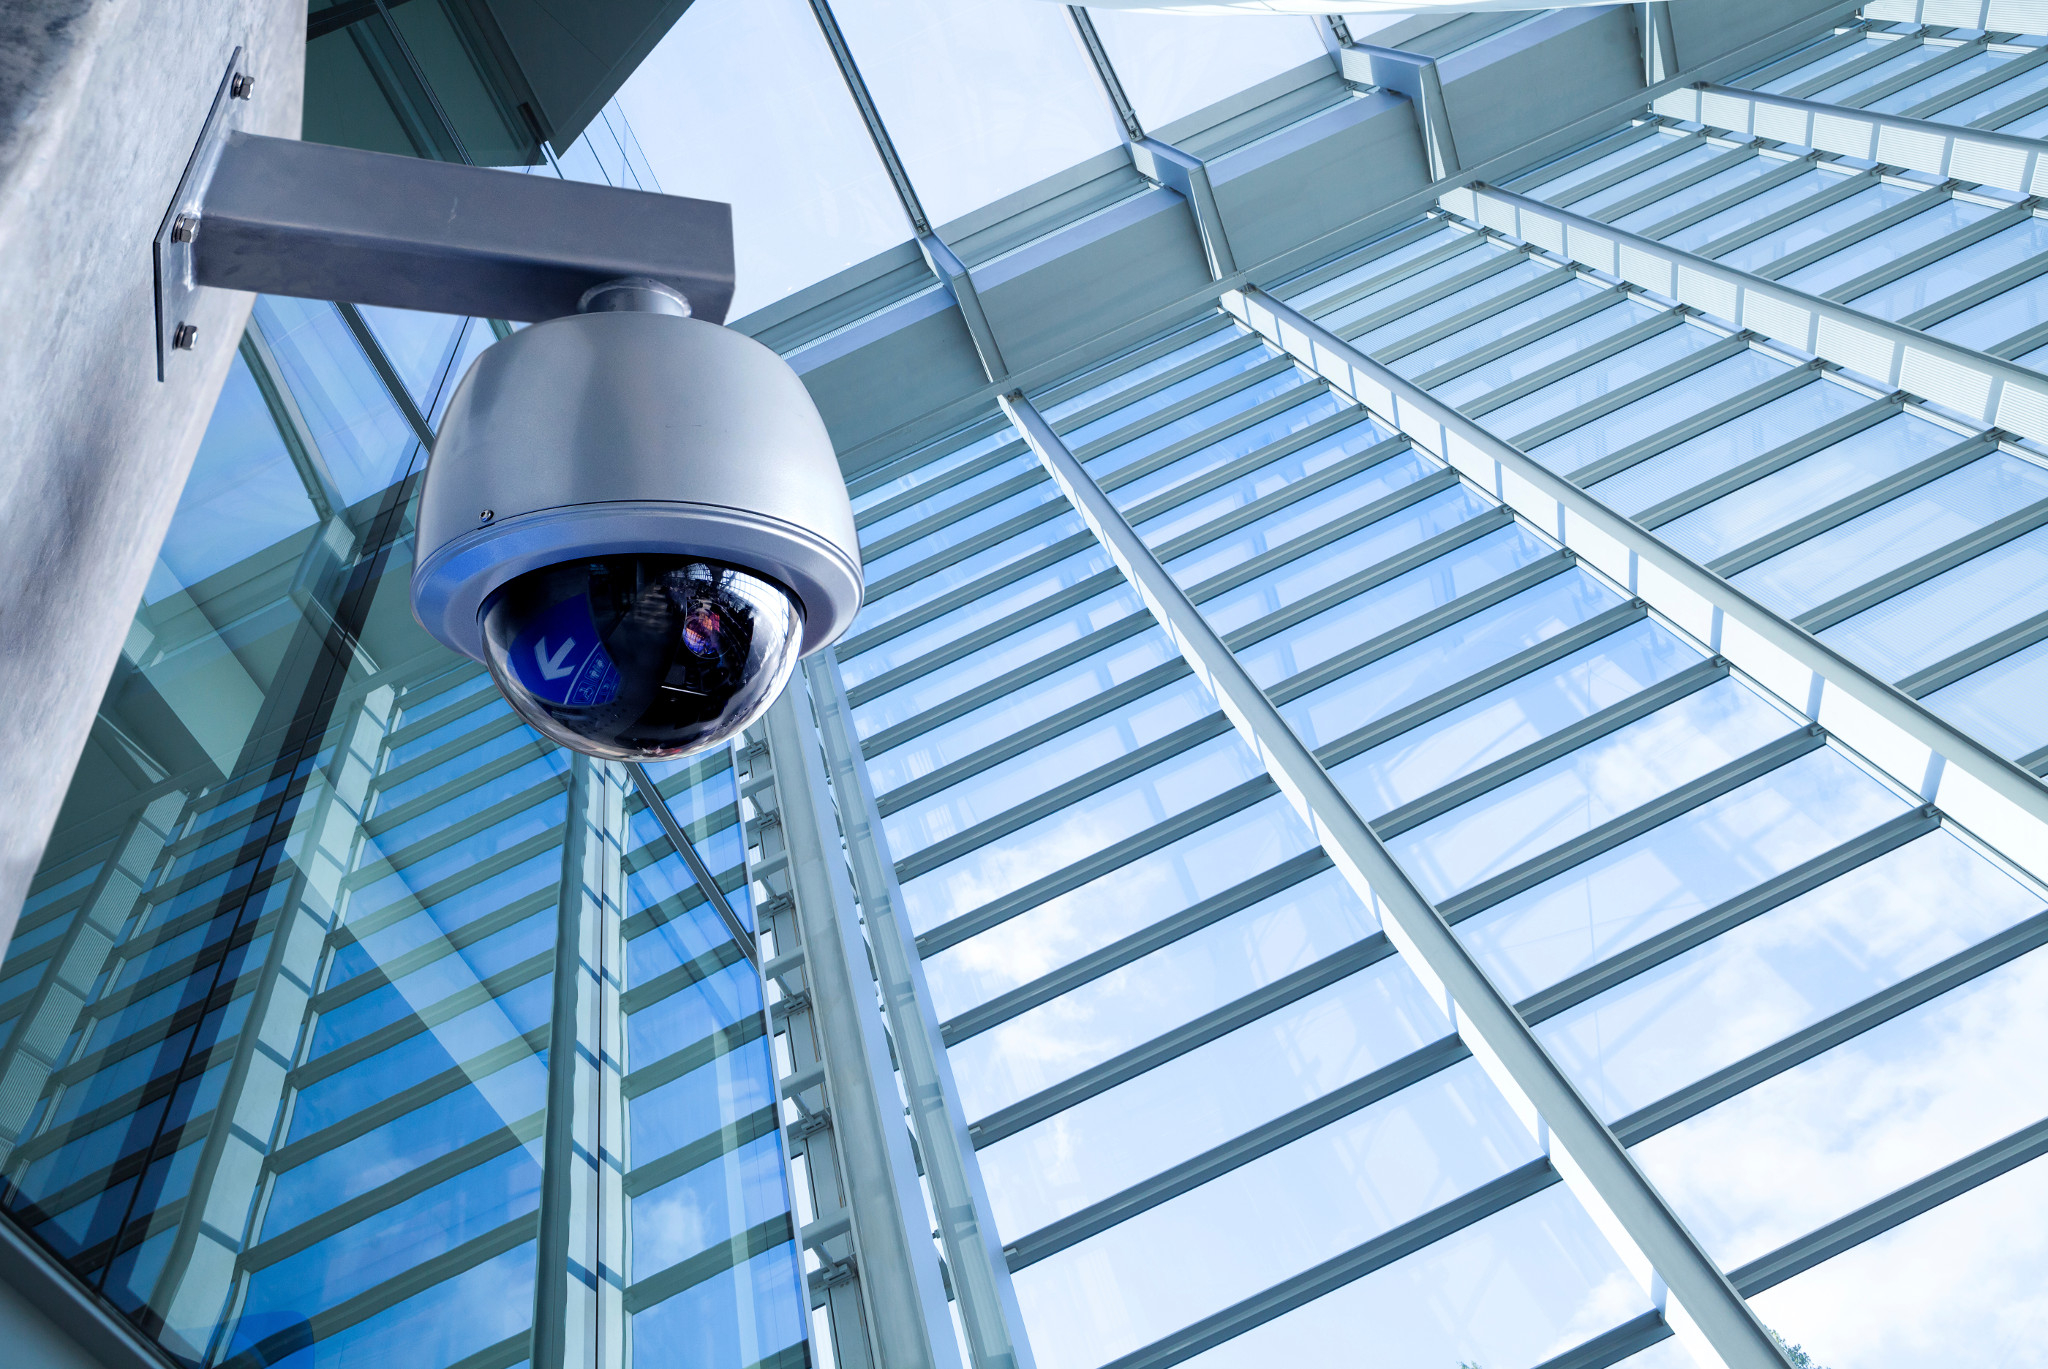 Камера ис. Системы видеонаблюдения (CCTV). Камера видеонаблюдения CCTV. Камеры видеонаблюдения на здании. Сиситемы безопасности.